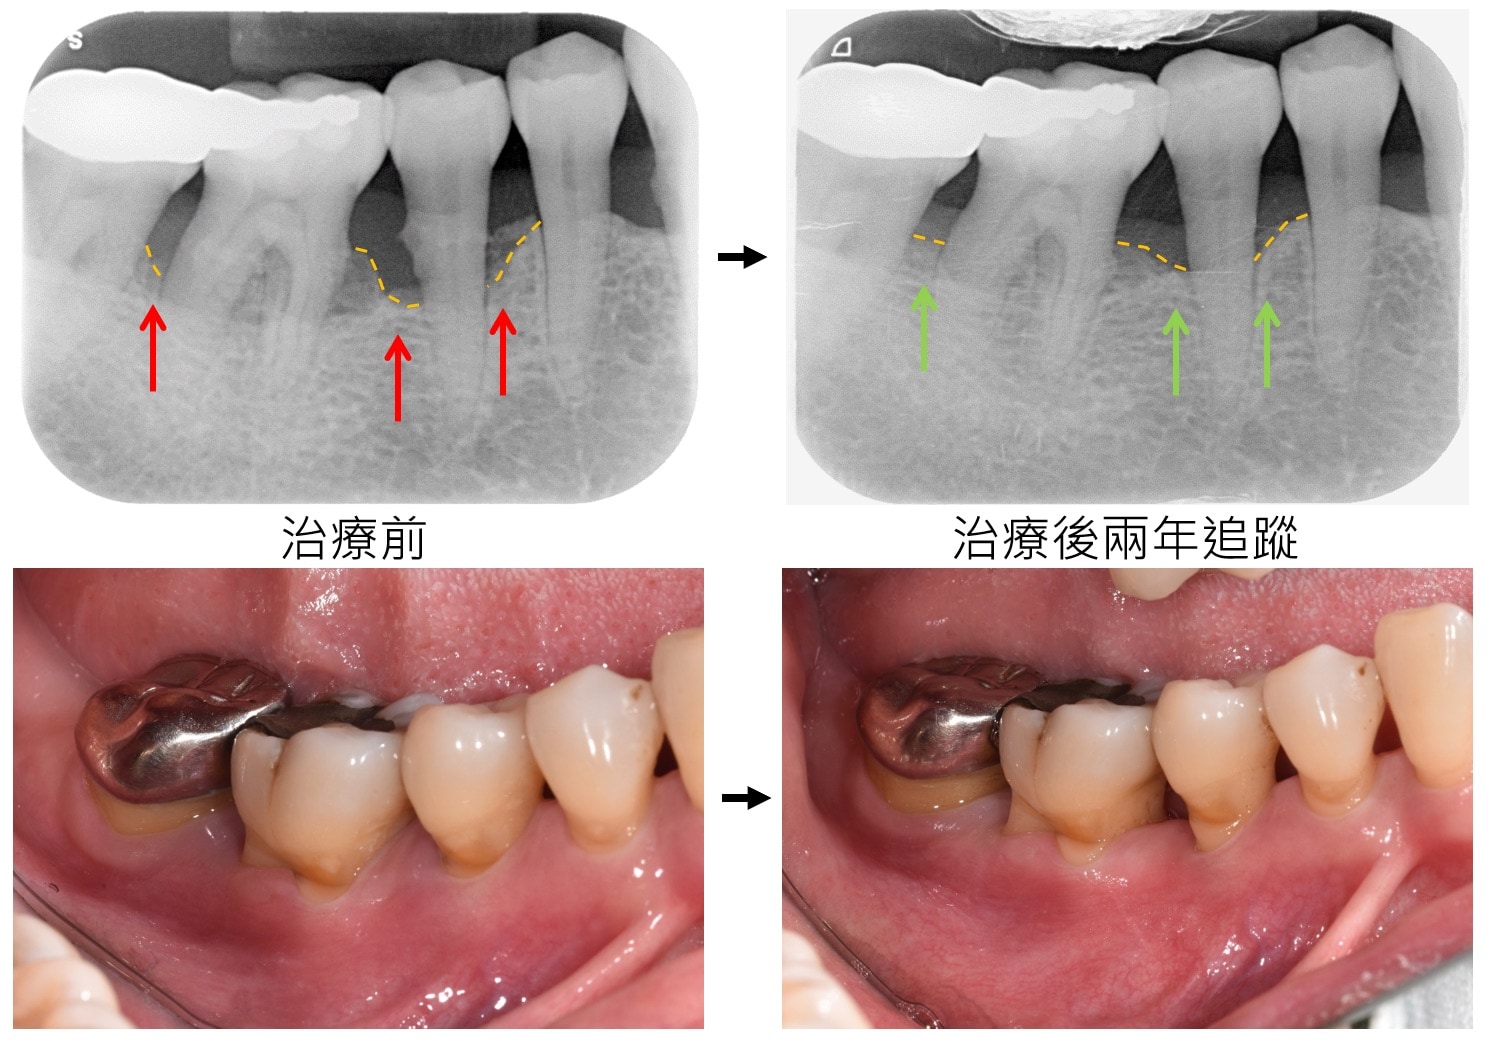 嚴重牙周病治療-雷射牙周治療-案例2-手術前後對比-李晉成醫師-台中